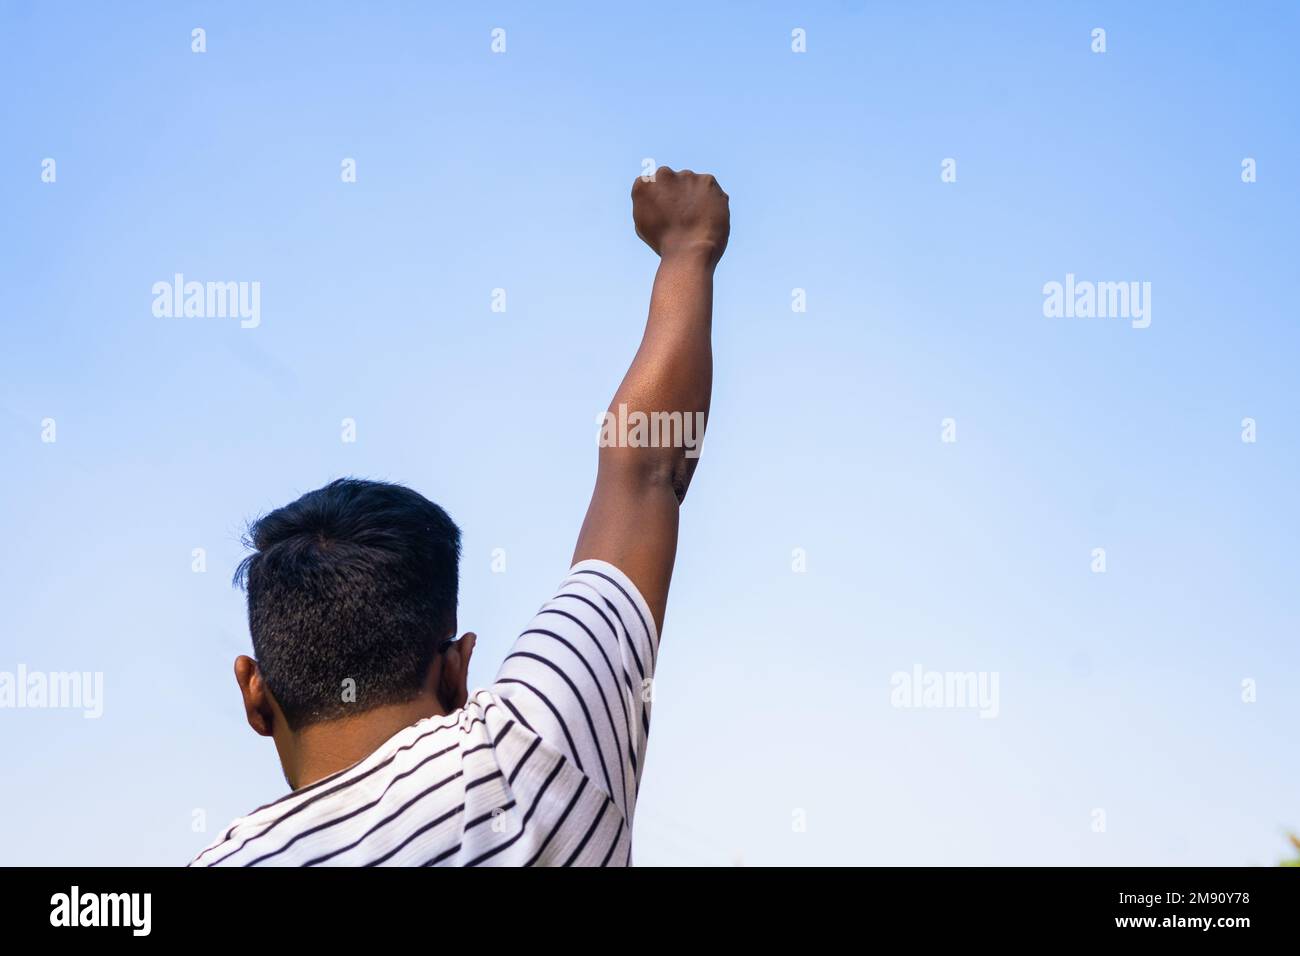 Vue arrière photo d'un jeune homme qui lève la main poing contre le ciel - concept du mois de l'histoire des Noirs, de la justice et de l'activisme. Banque D'Images